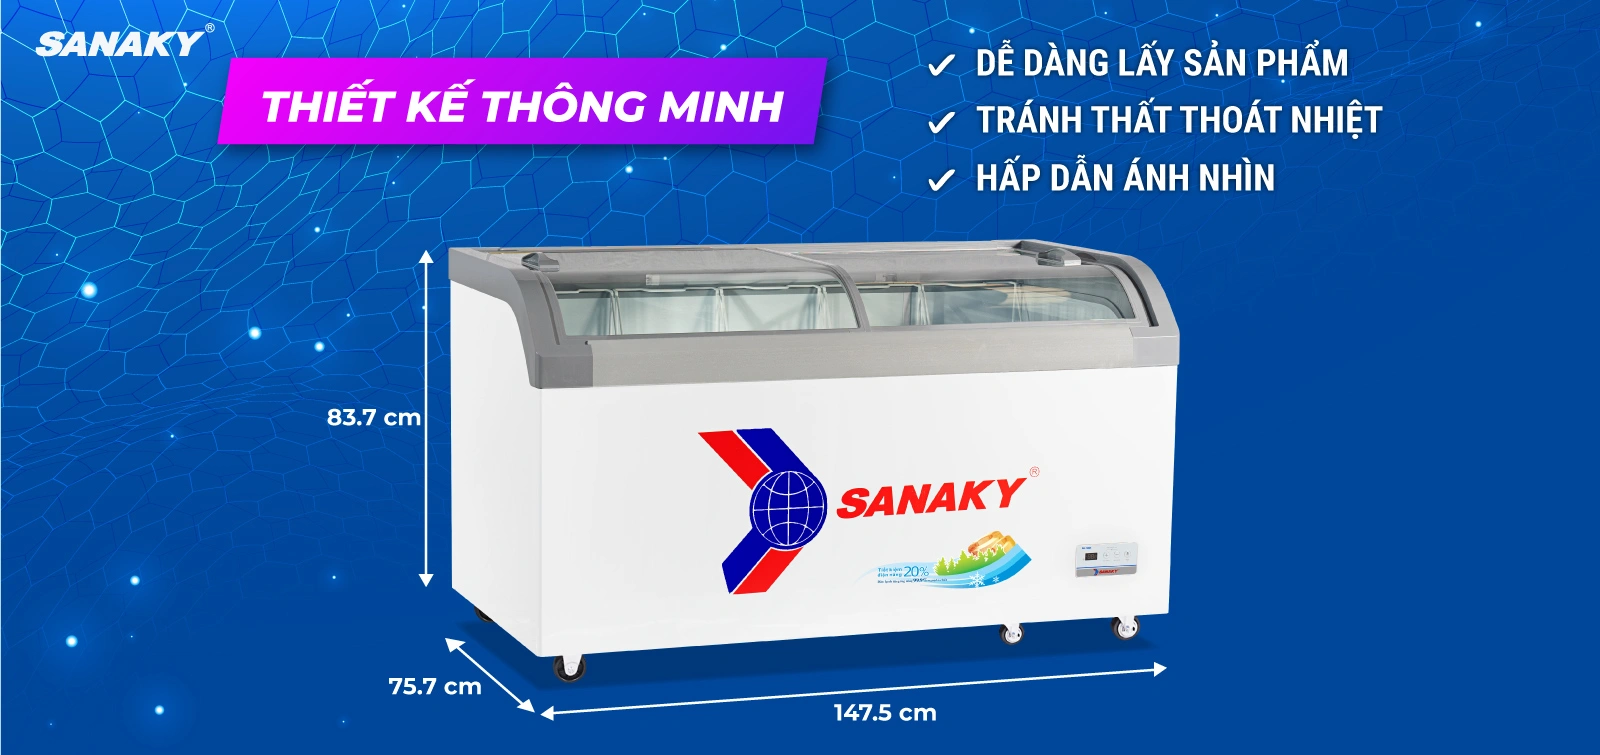 Thiết kế kính cong của Tủ Đông Sanaky VH-899KA mang đến nhiều ưu điểm vượt trội: